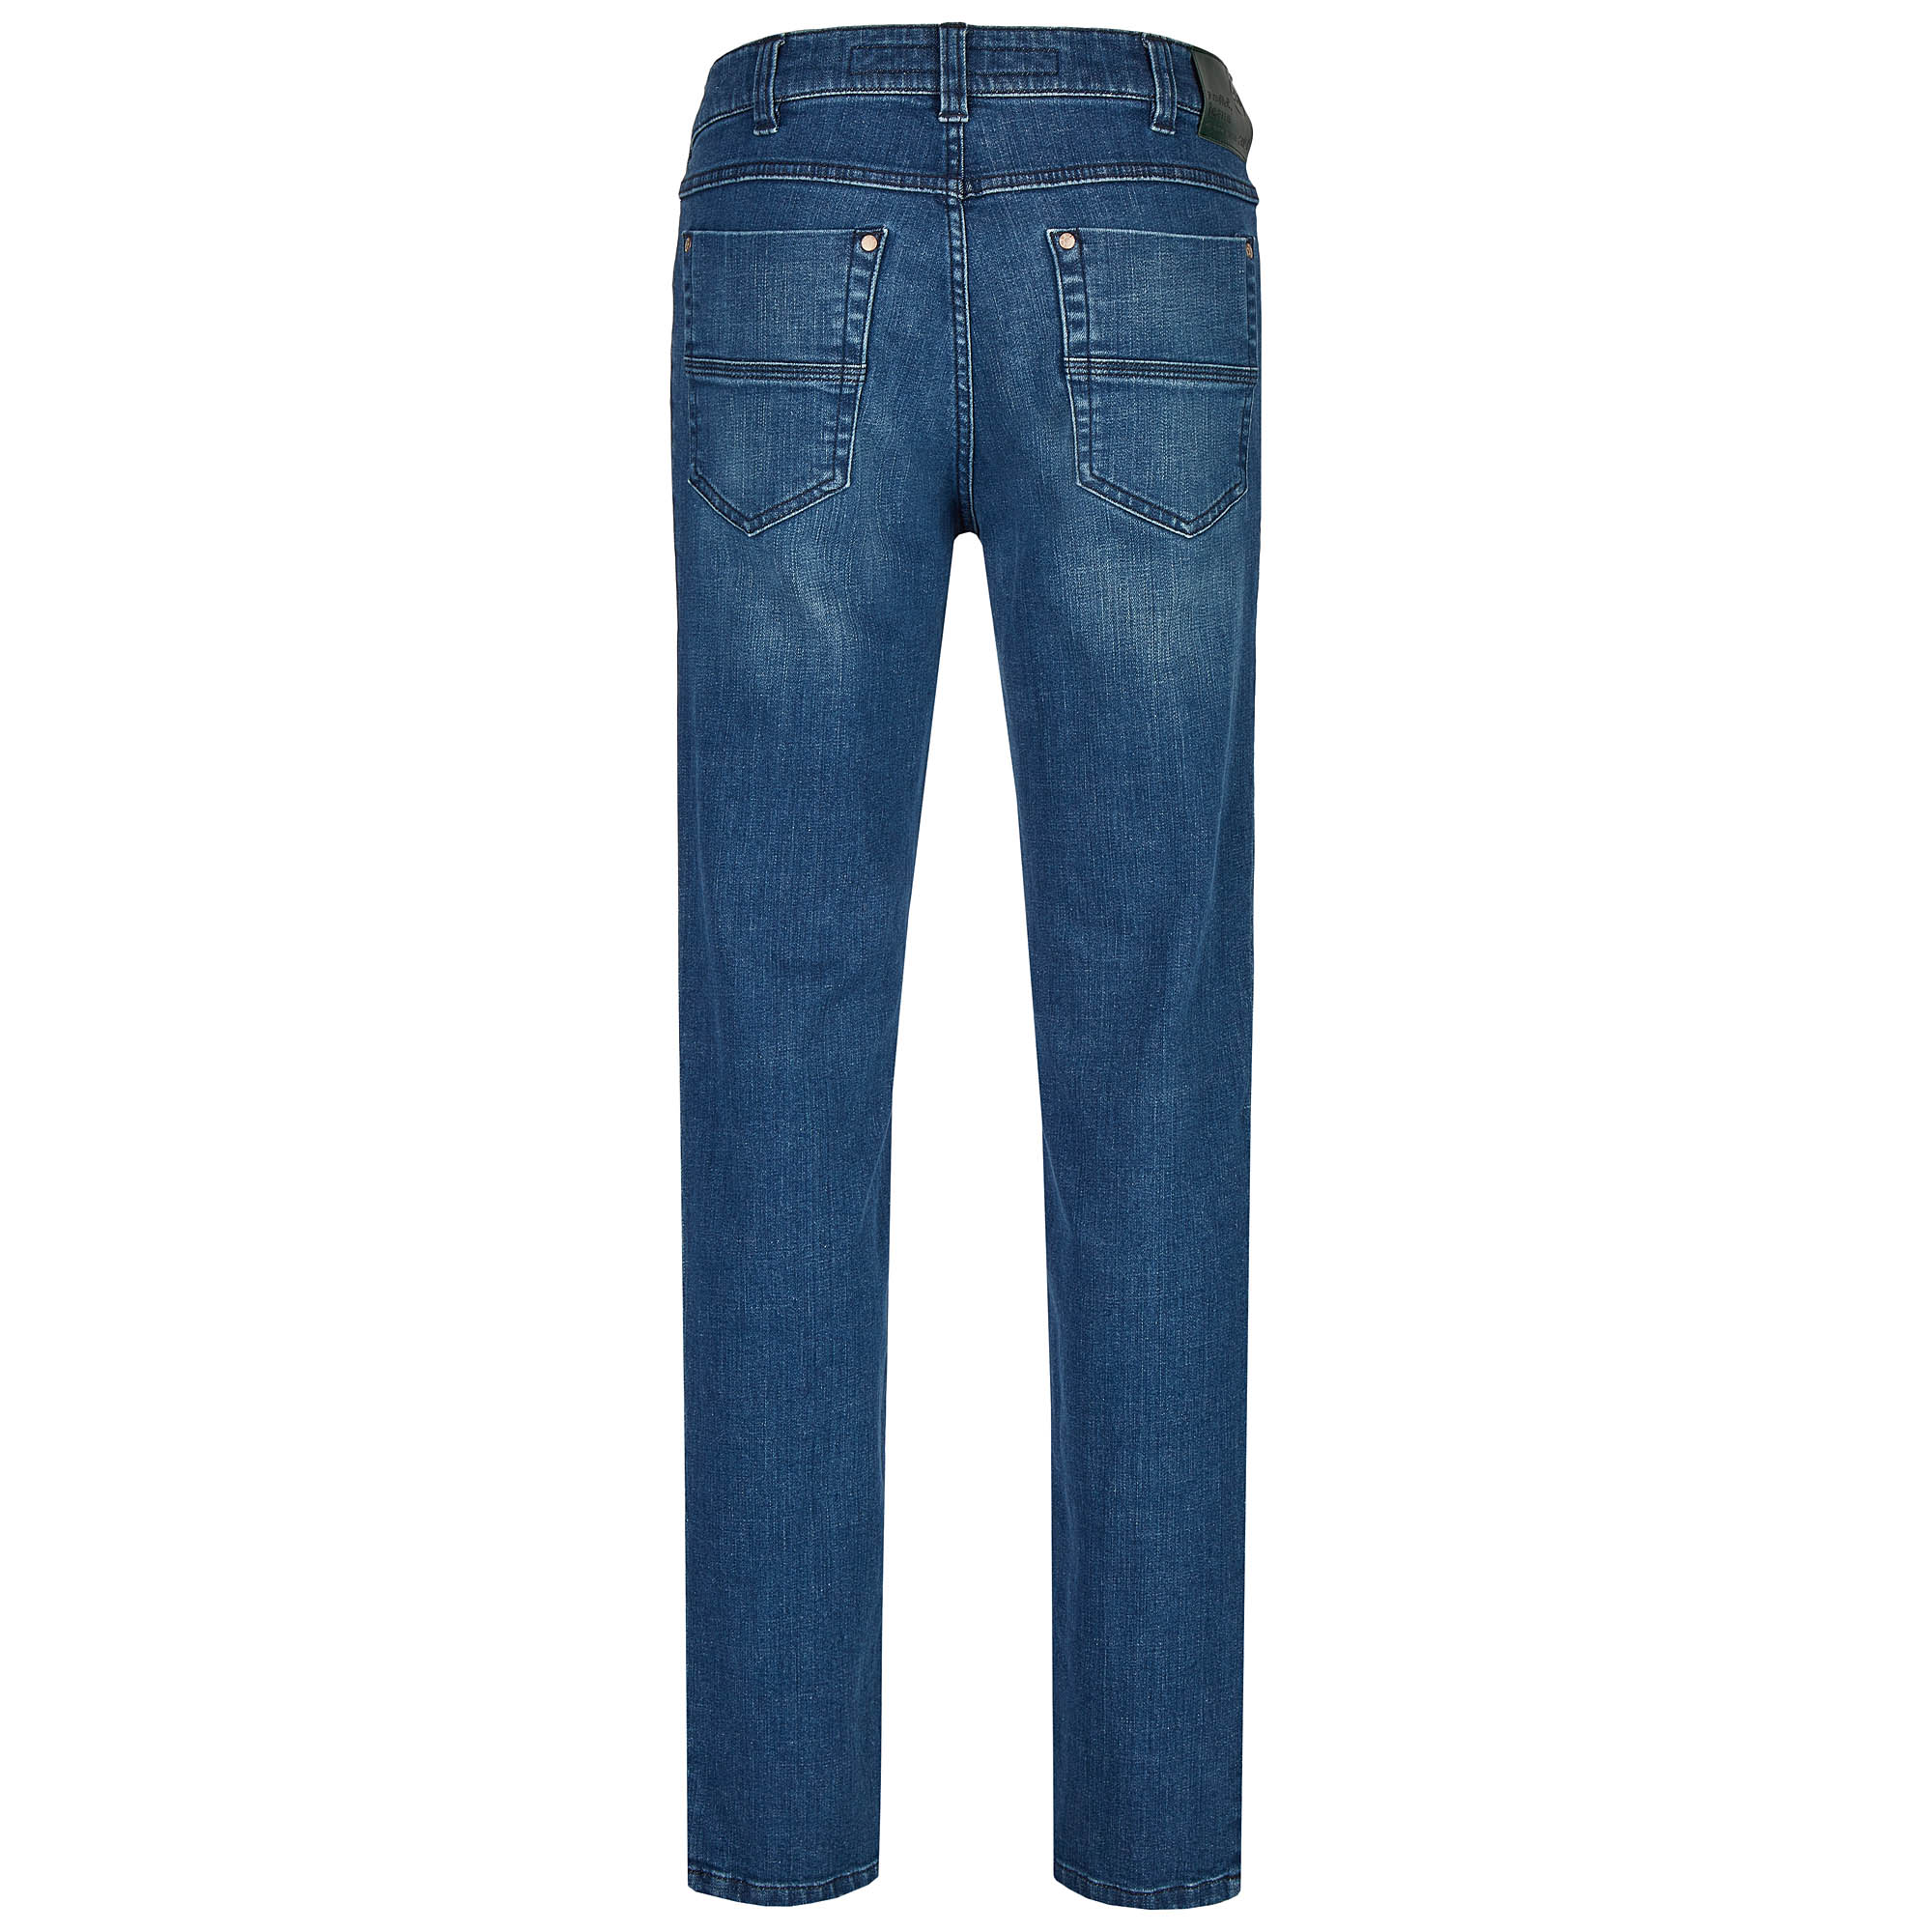 007130541330 2 Revils Jeans Hosen